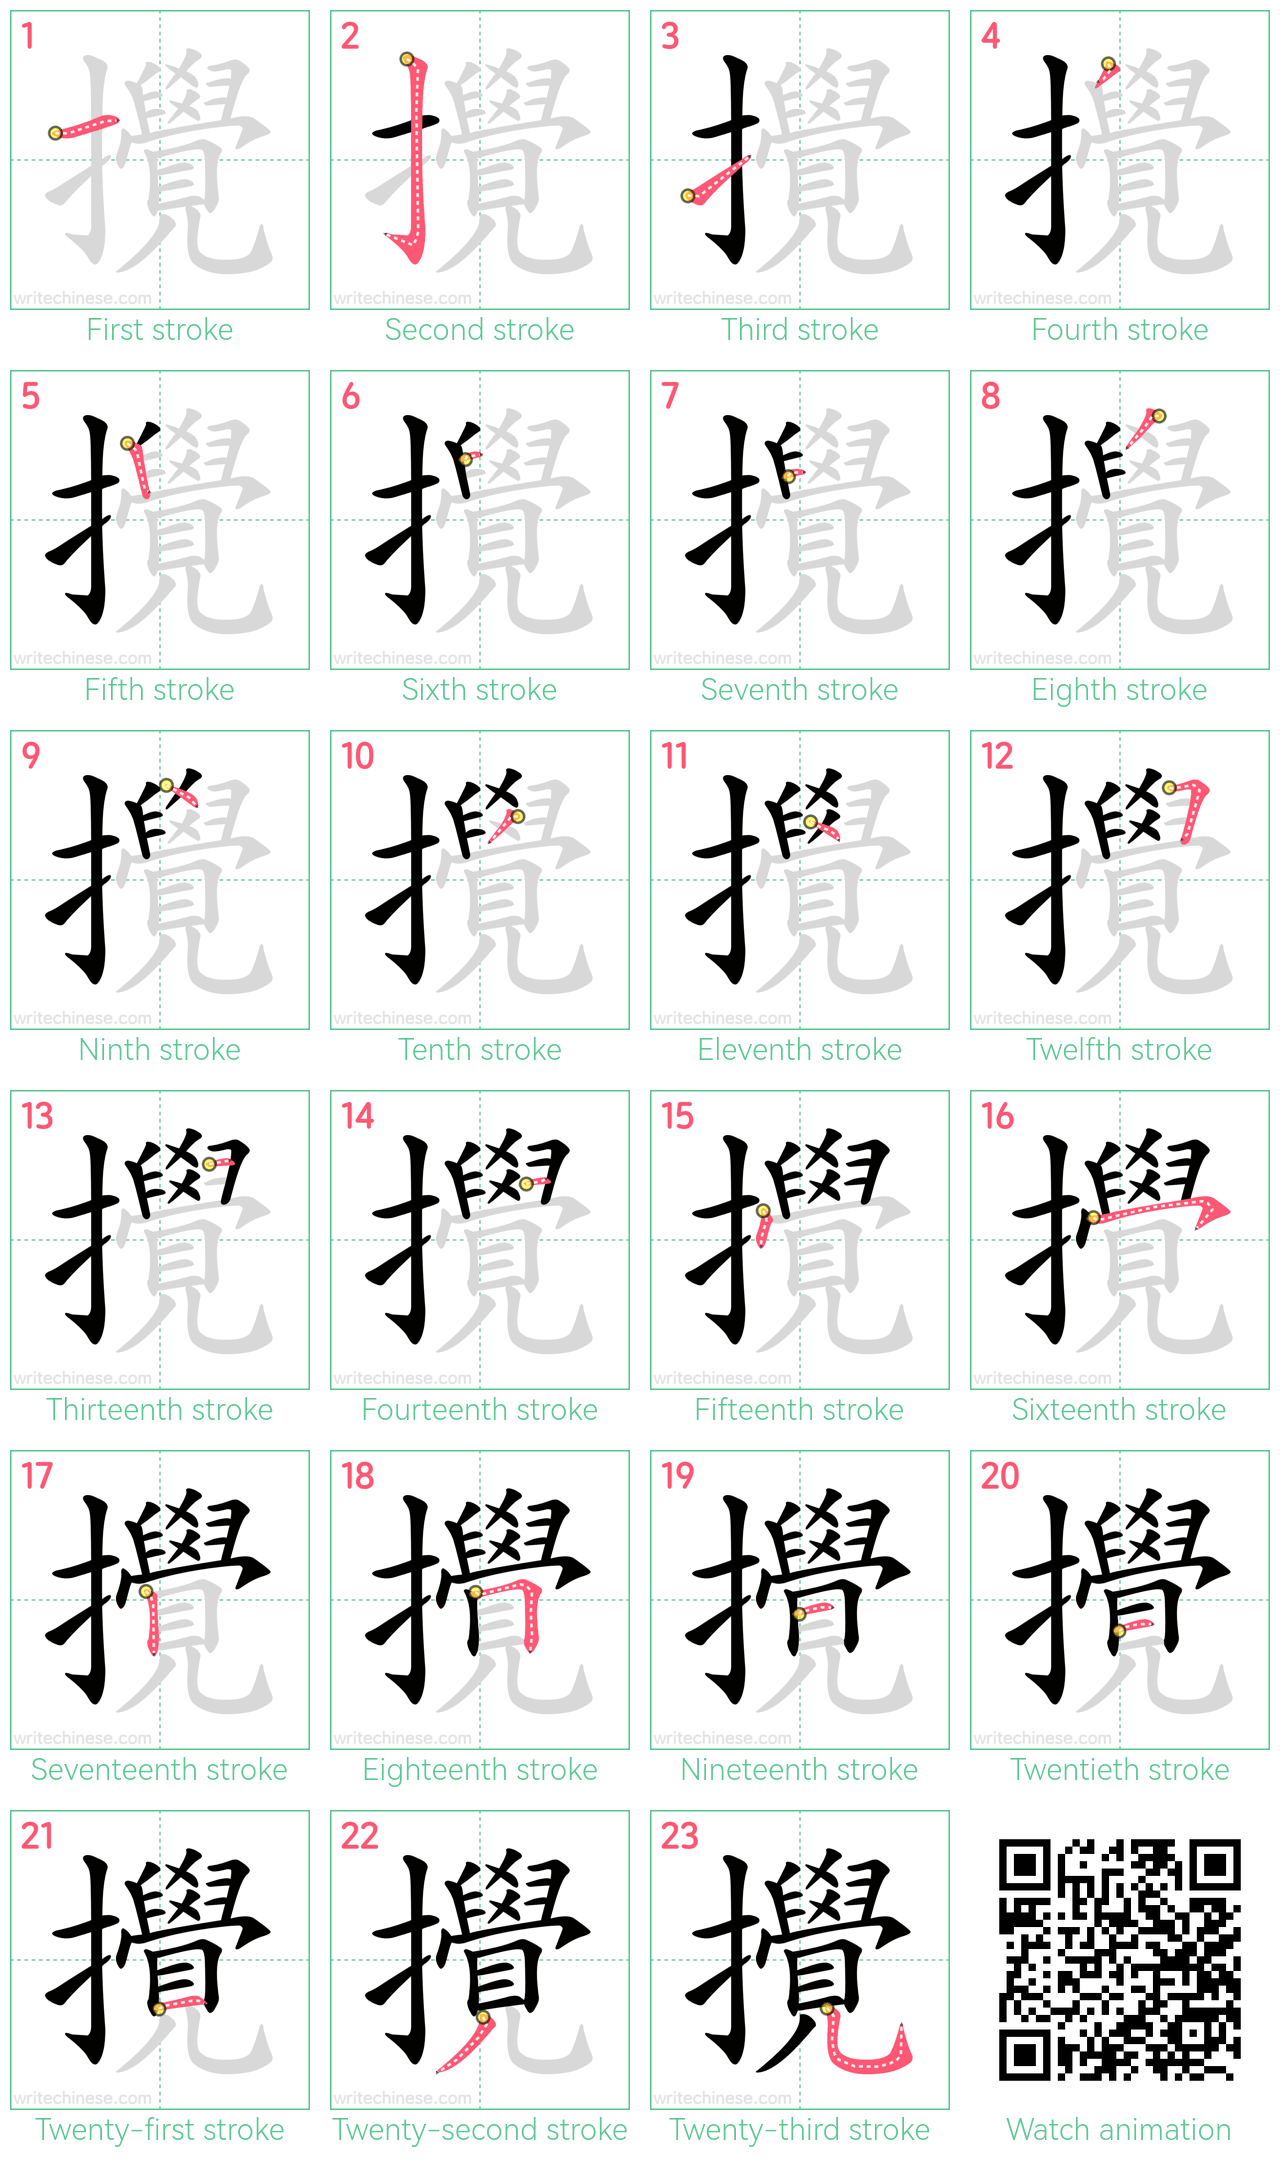 攪 step-by-step stroke order diagrams